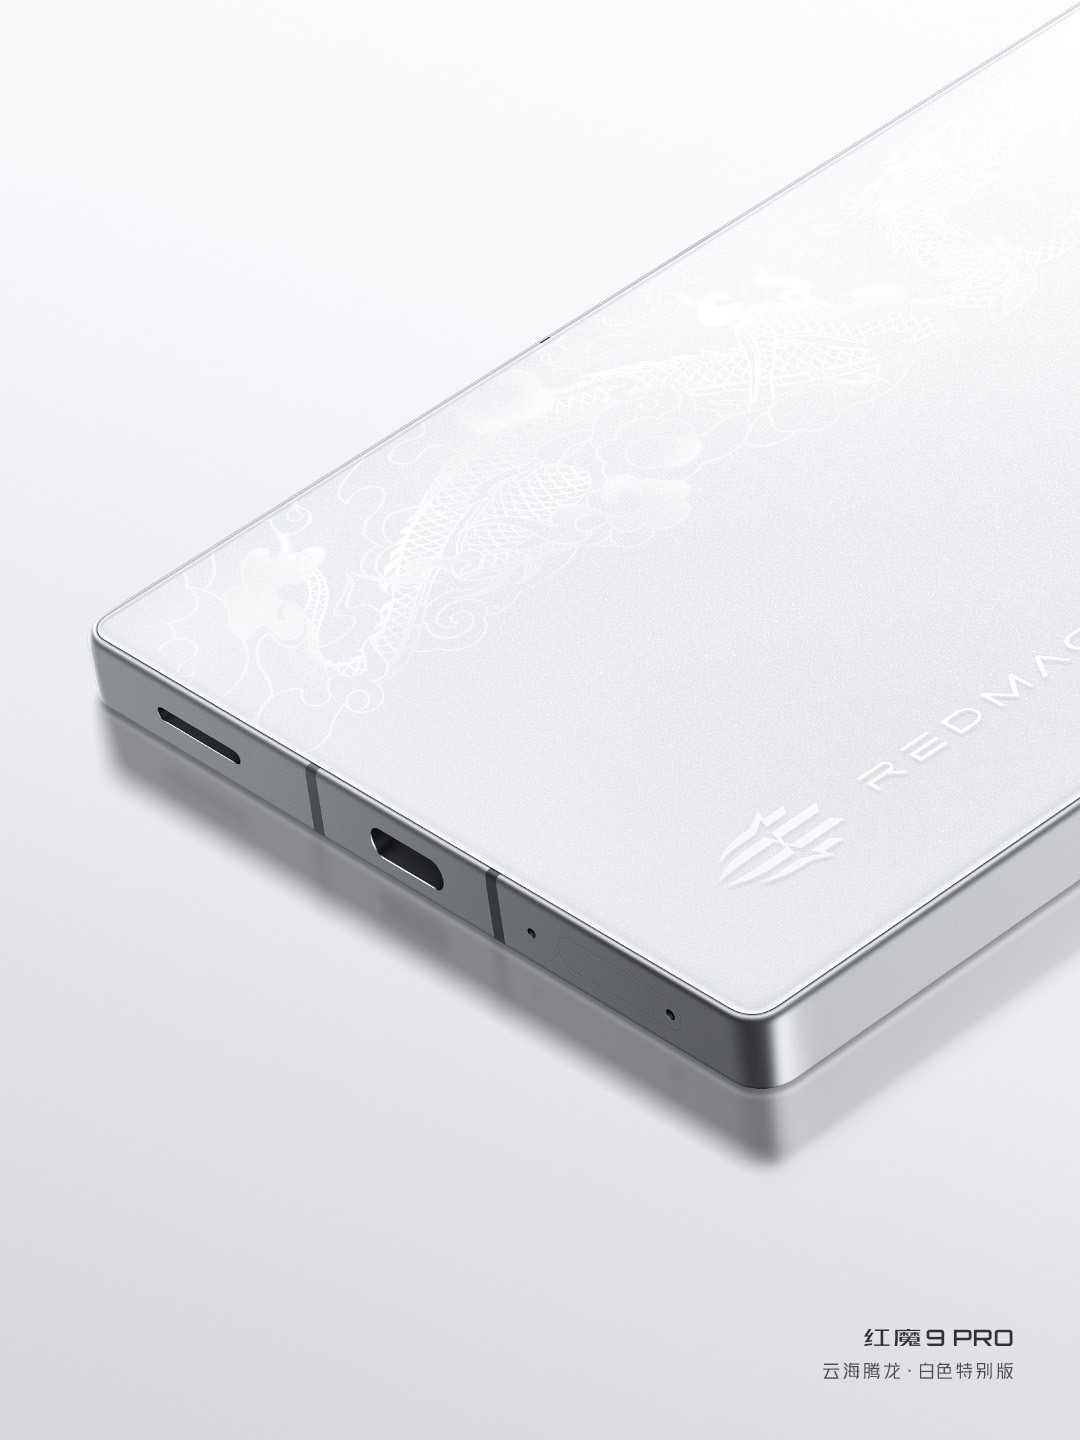 红魔9 Pro推出云海腾龙限定版，1月29日正式开售